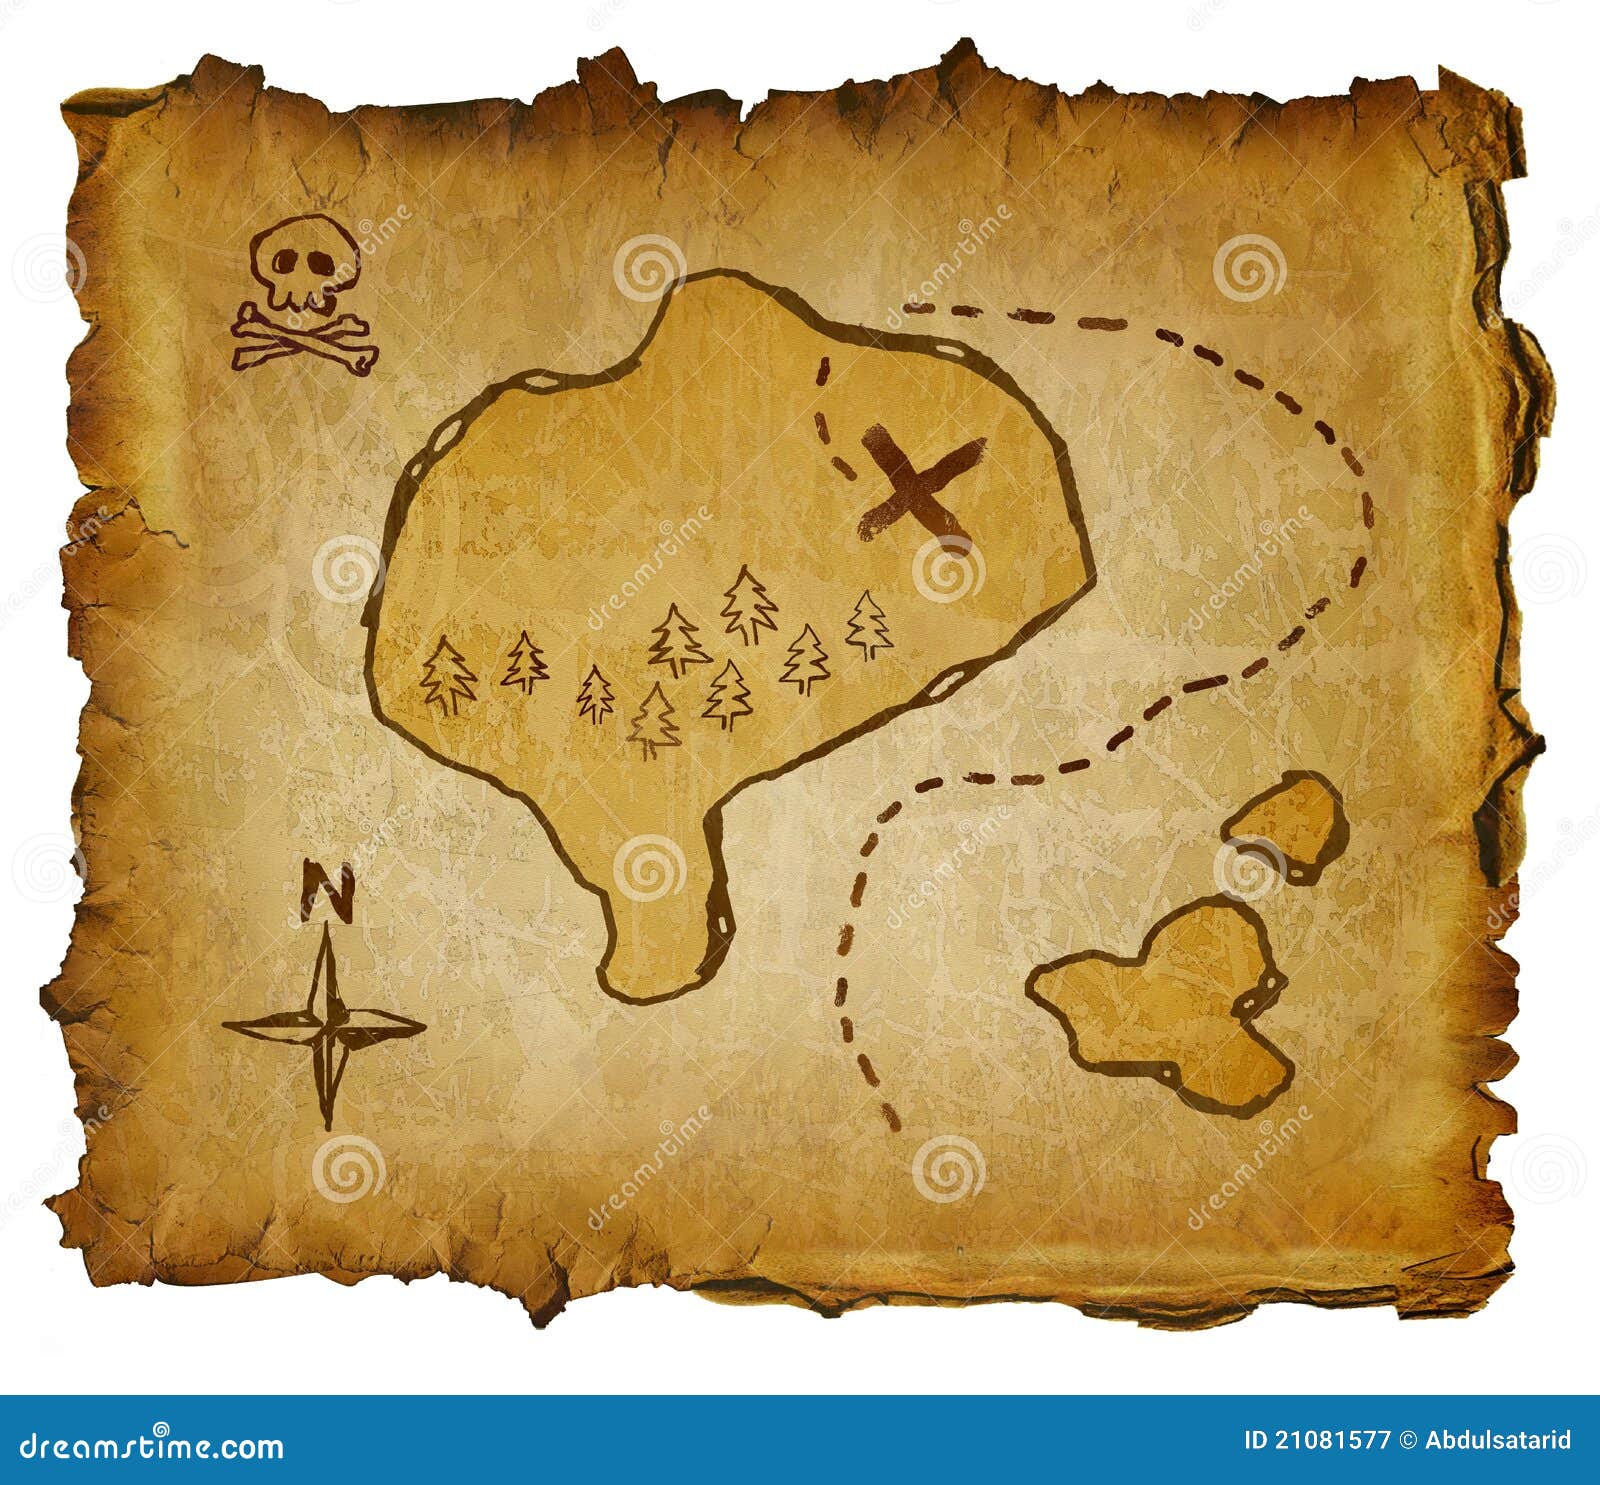 [005] Peter Pan - Página 6 Mapa-do-tesouro-21081577